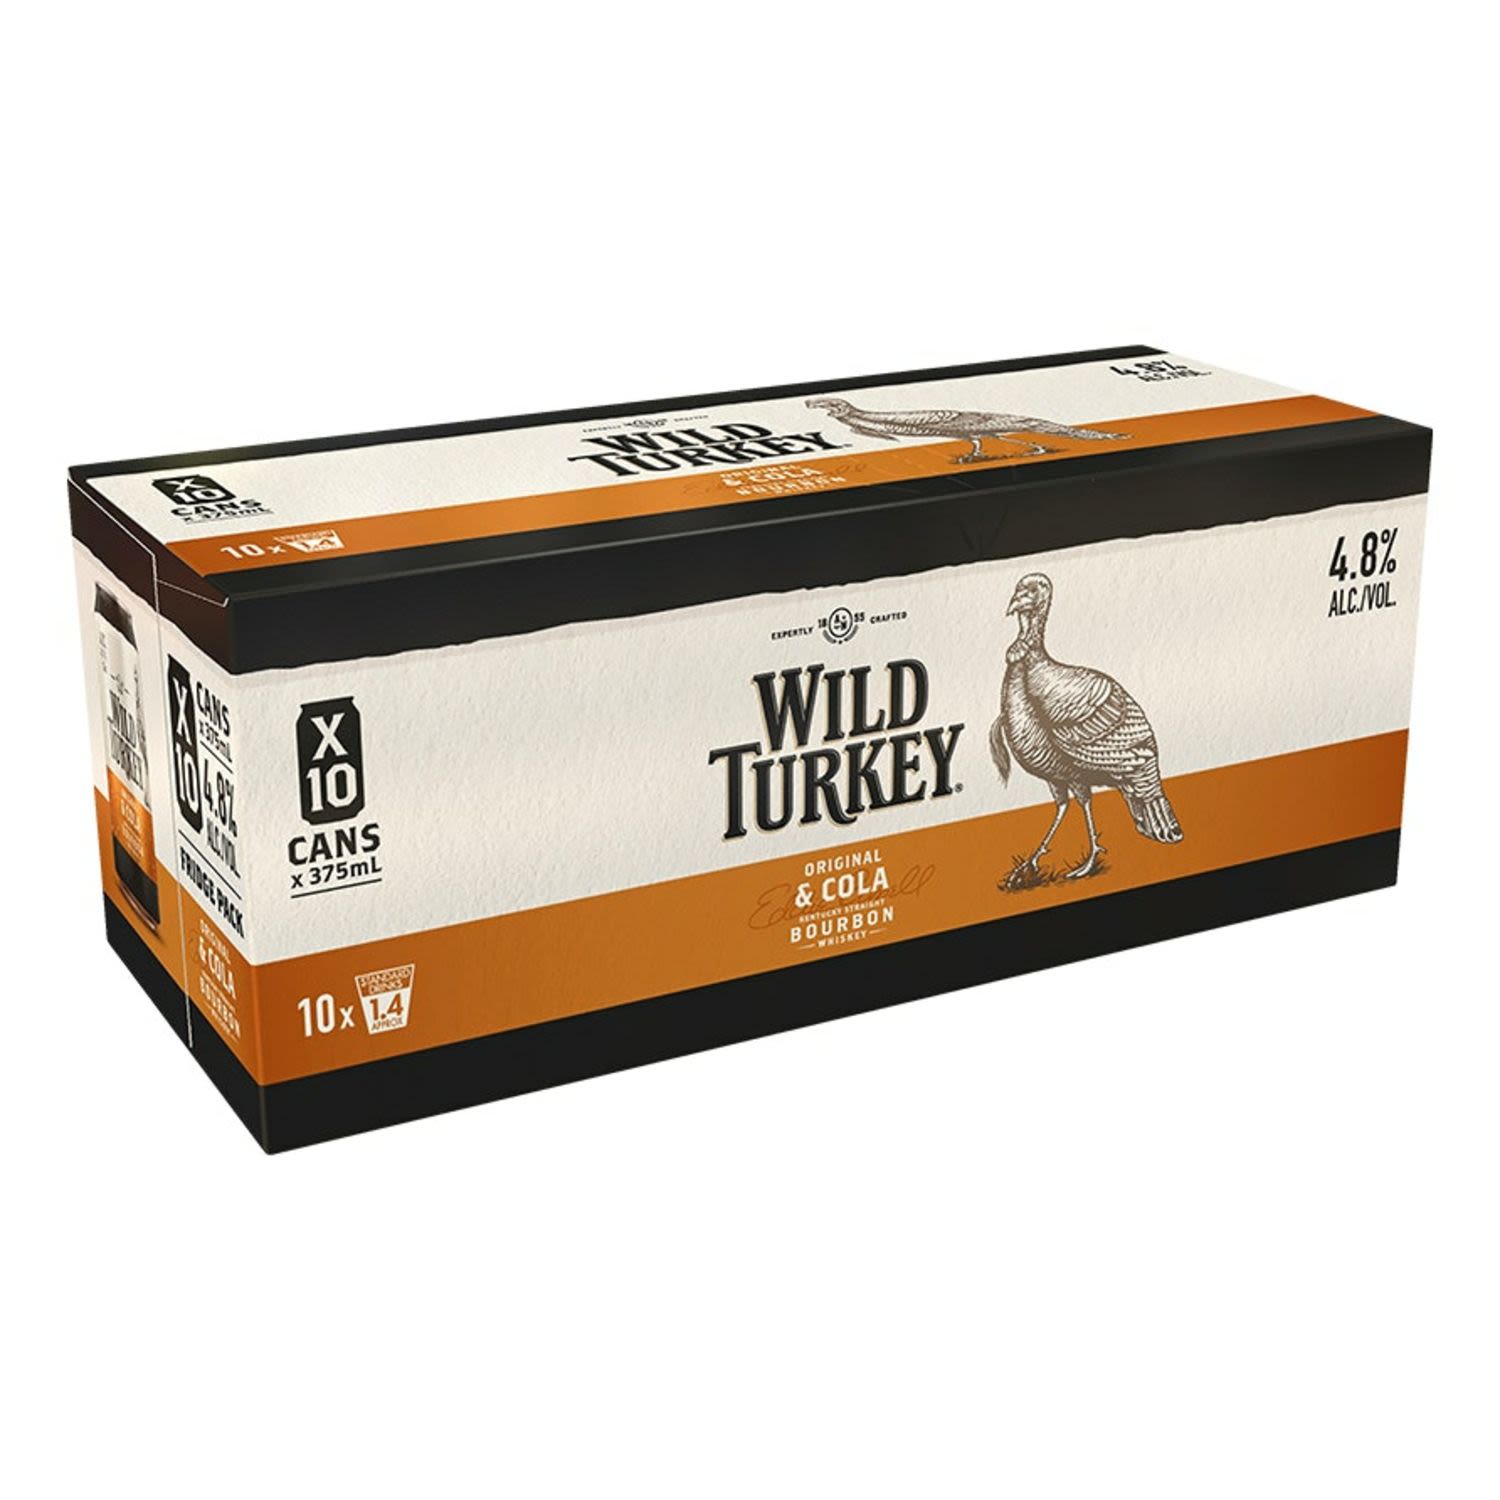 Wild Turkey Original & Cola Can 375mL 10 Pack